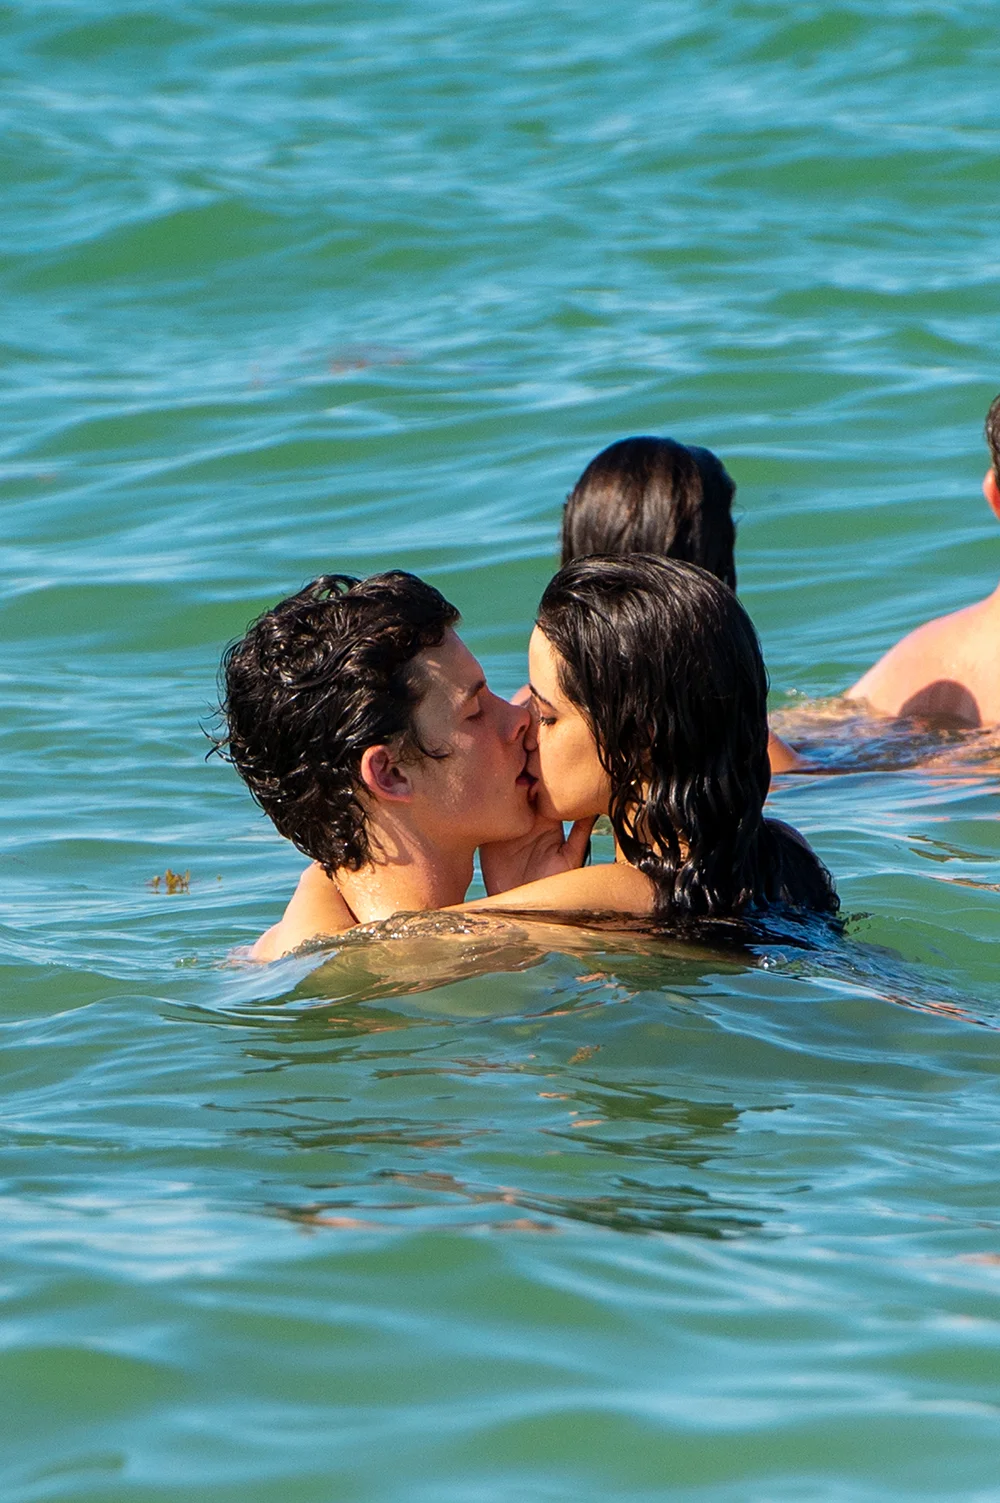 Каміла Кабельйо і Шон Мендес підтвердили свій роман пристрасним поцілунком у воді - фото 443513